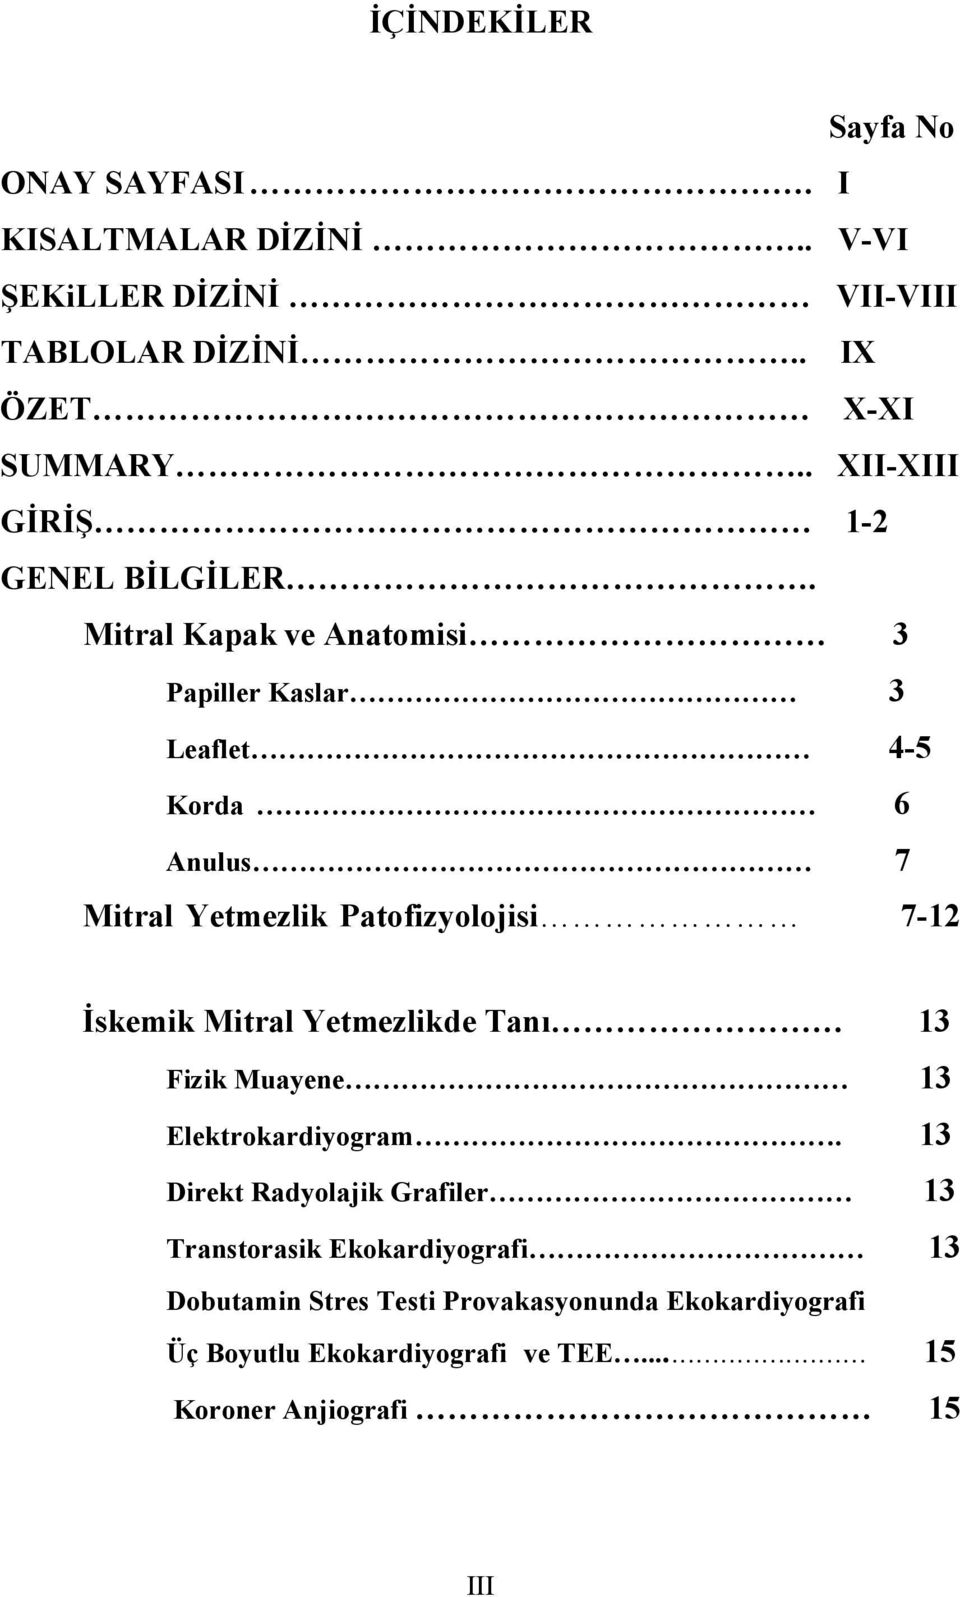 Mitral Kapak ve Anatomisi 3 Papiller Kaslar 3 Leaflet 4-5 Korda 6 Anulus 7 Mitral Yetmezlik Patofizyolojisi 7-12 İskemik Mitral